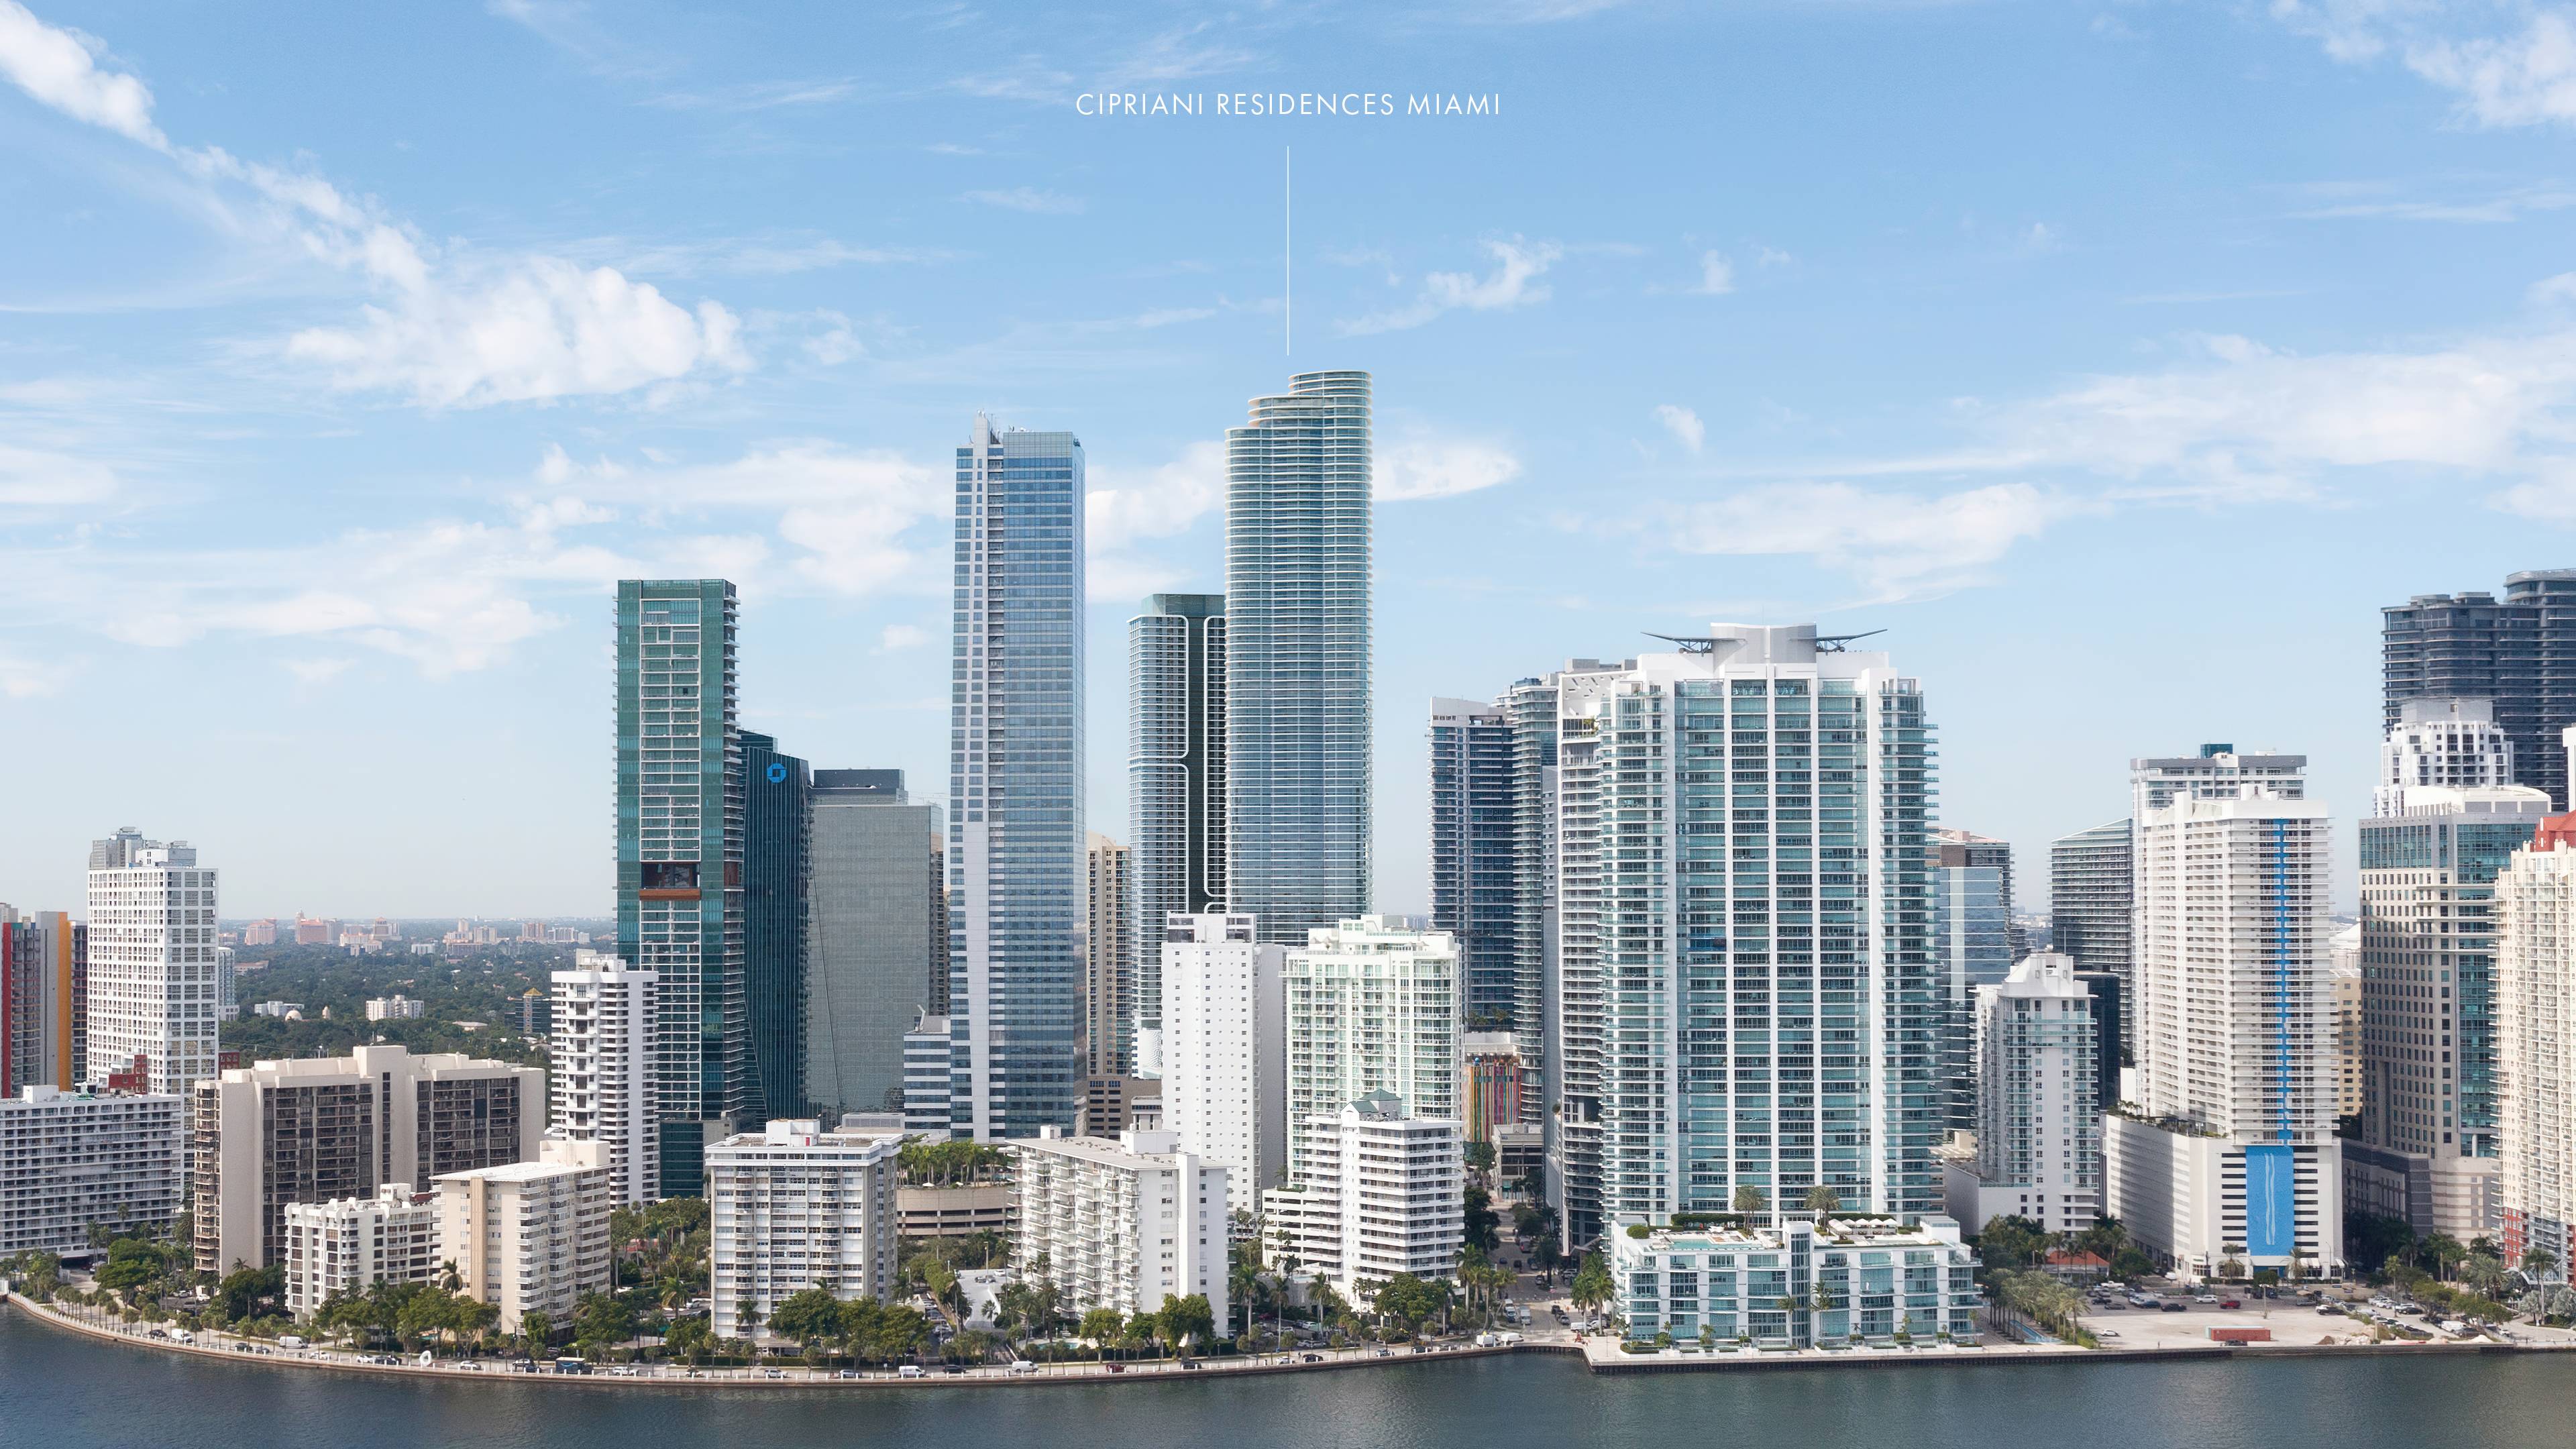 Cipriani Residences Miami - an epitome of timeless Italian spirit